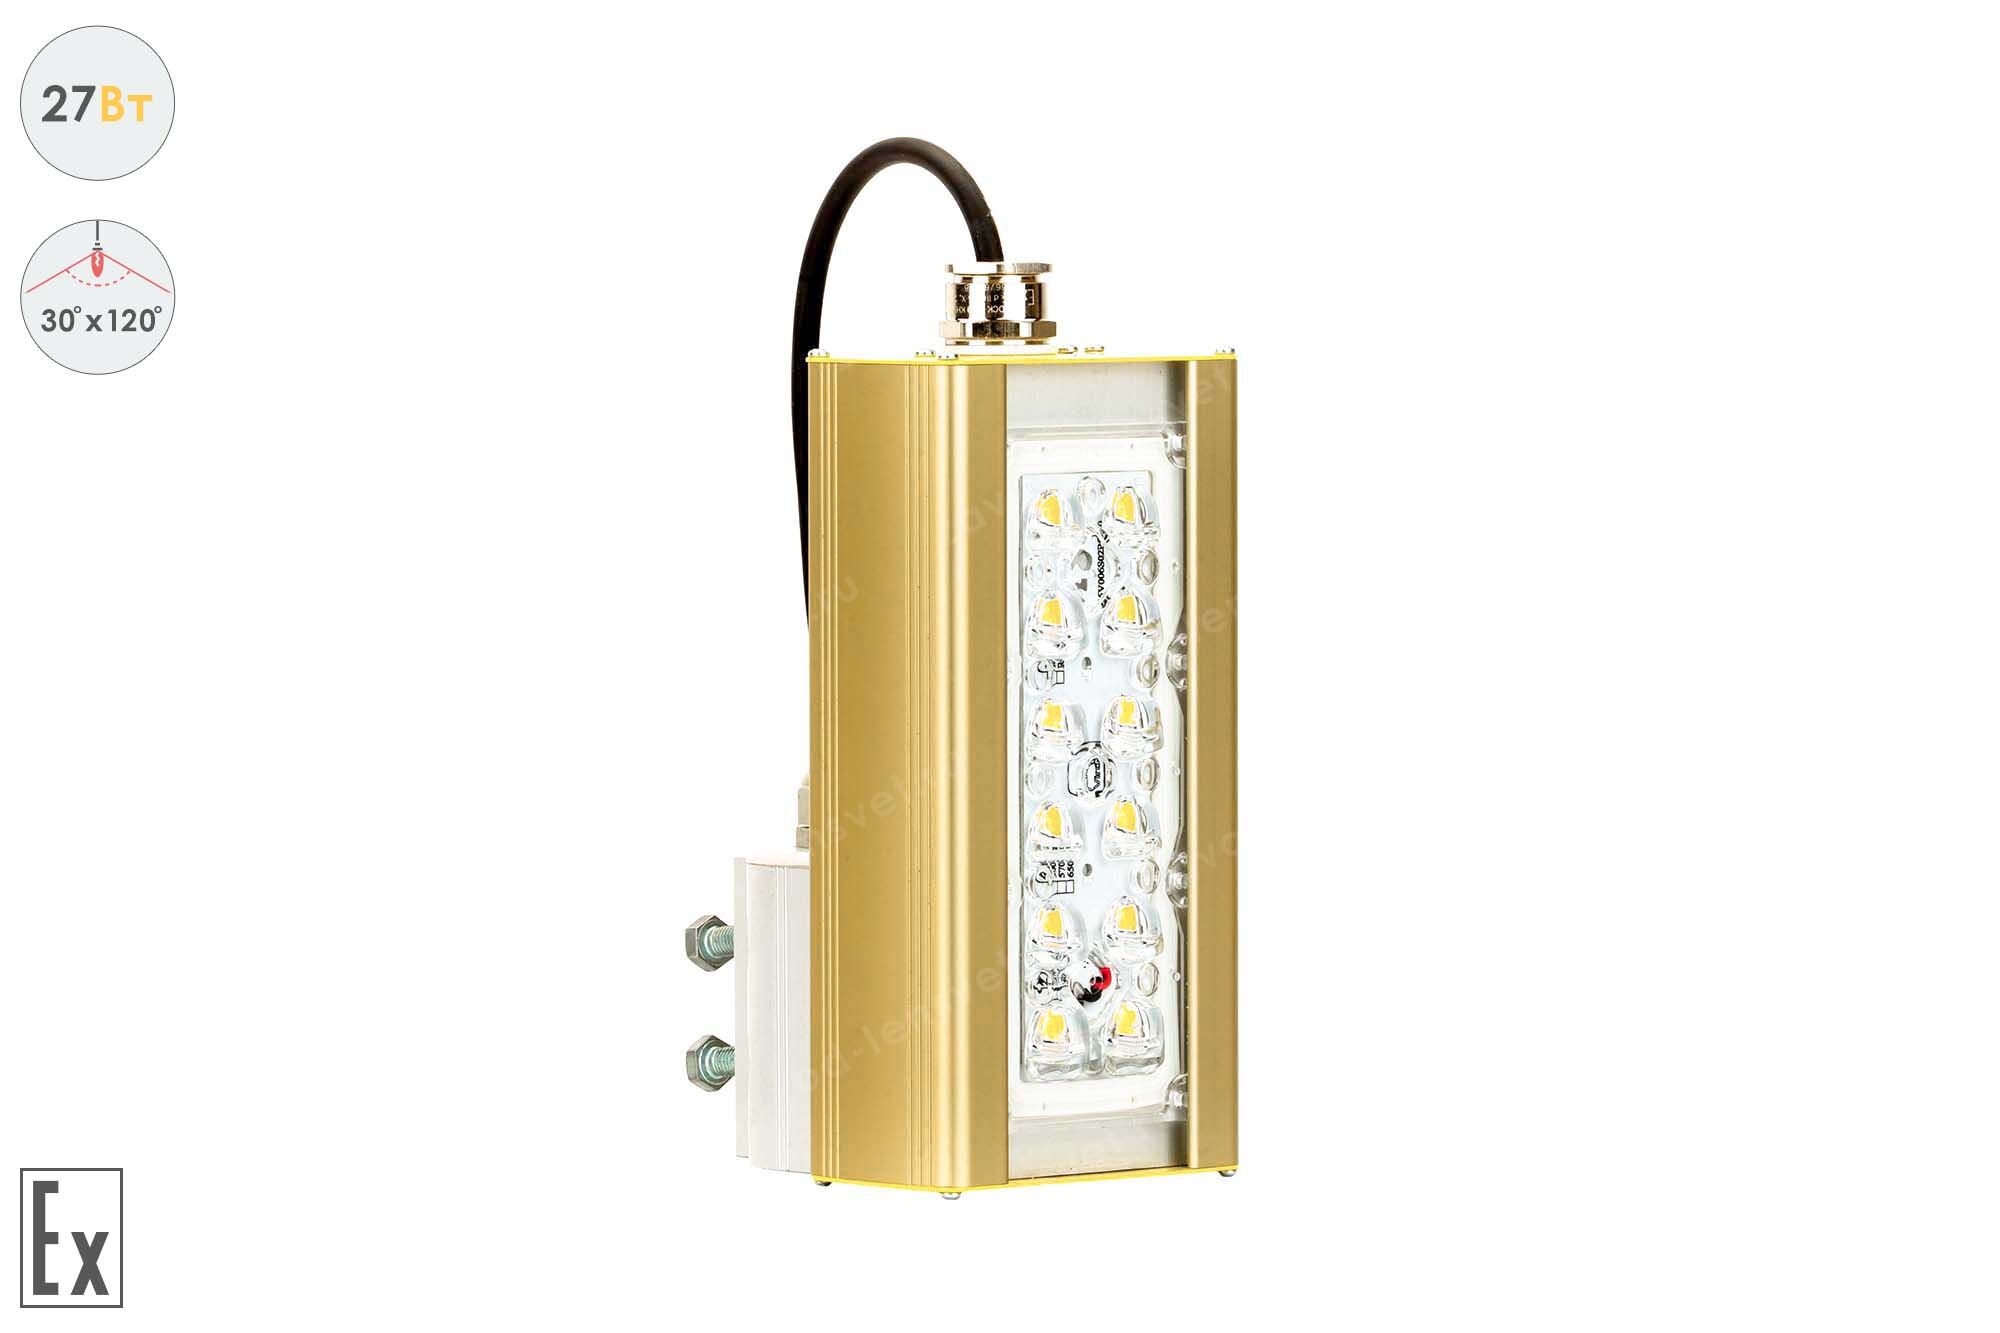 Светильник взрывозащищенный светодиодный Магистраль GOLD, консоль K-1, 27 Вт, 30X120°